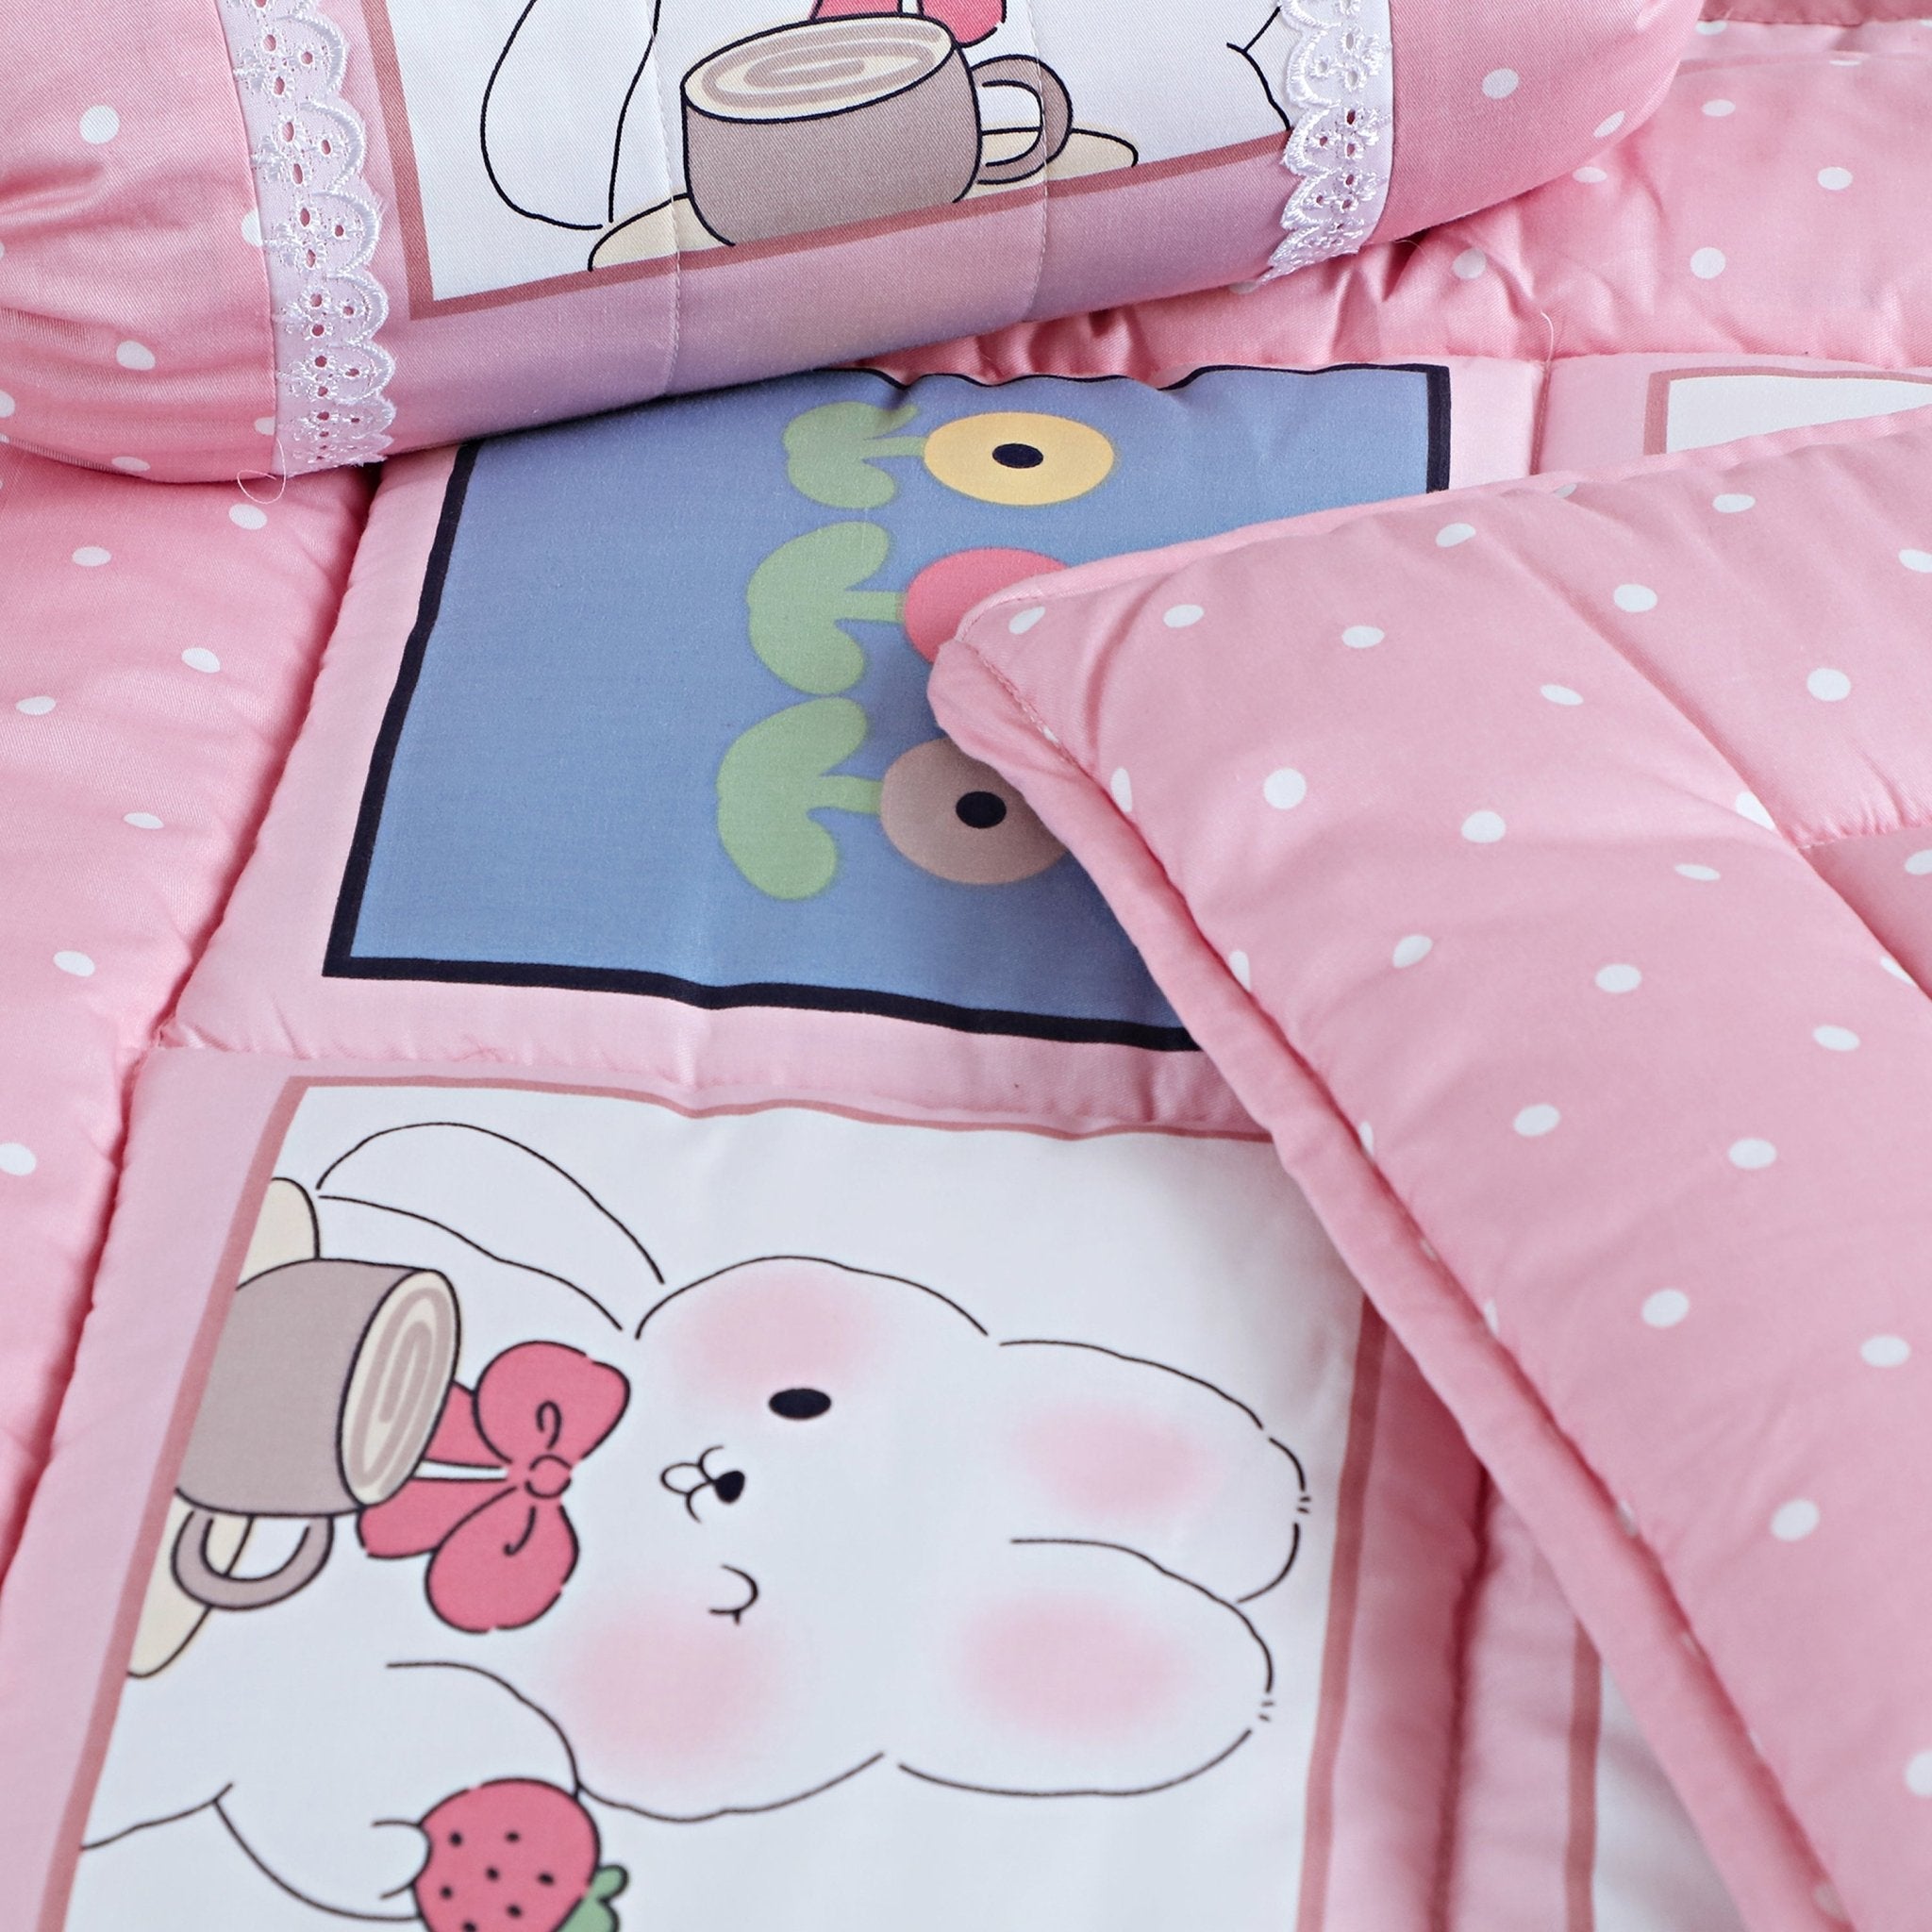 Malako Avene Pink Cotton Baby Crib Bedding Set with Comforter - MALAKO